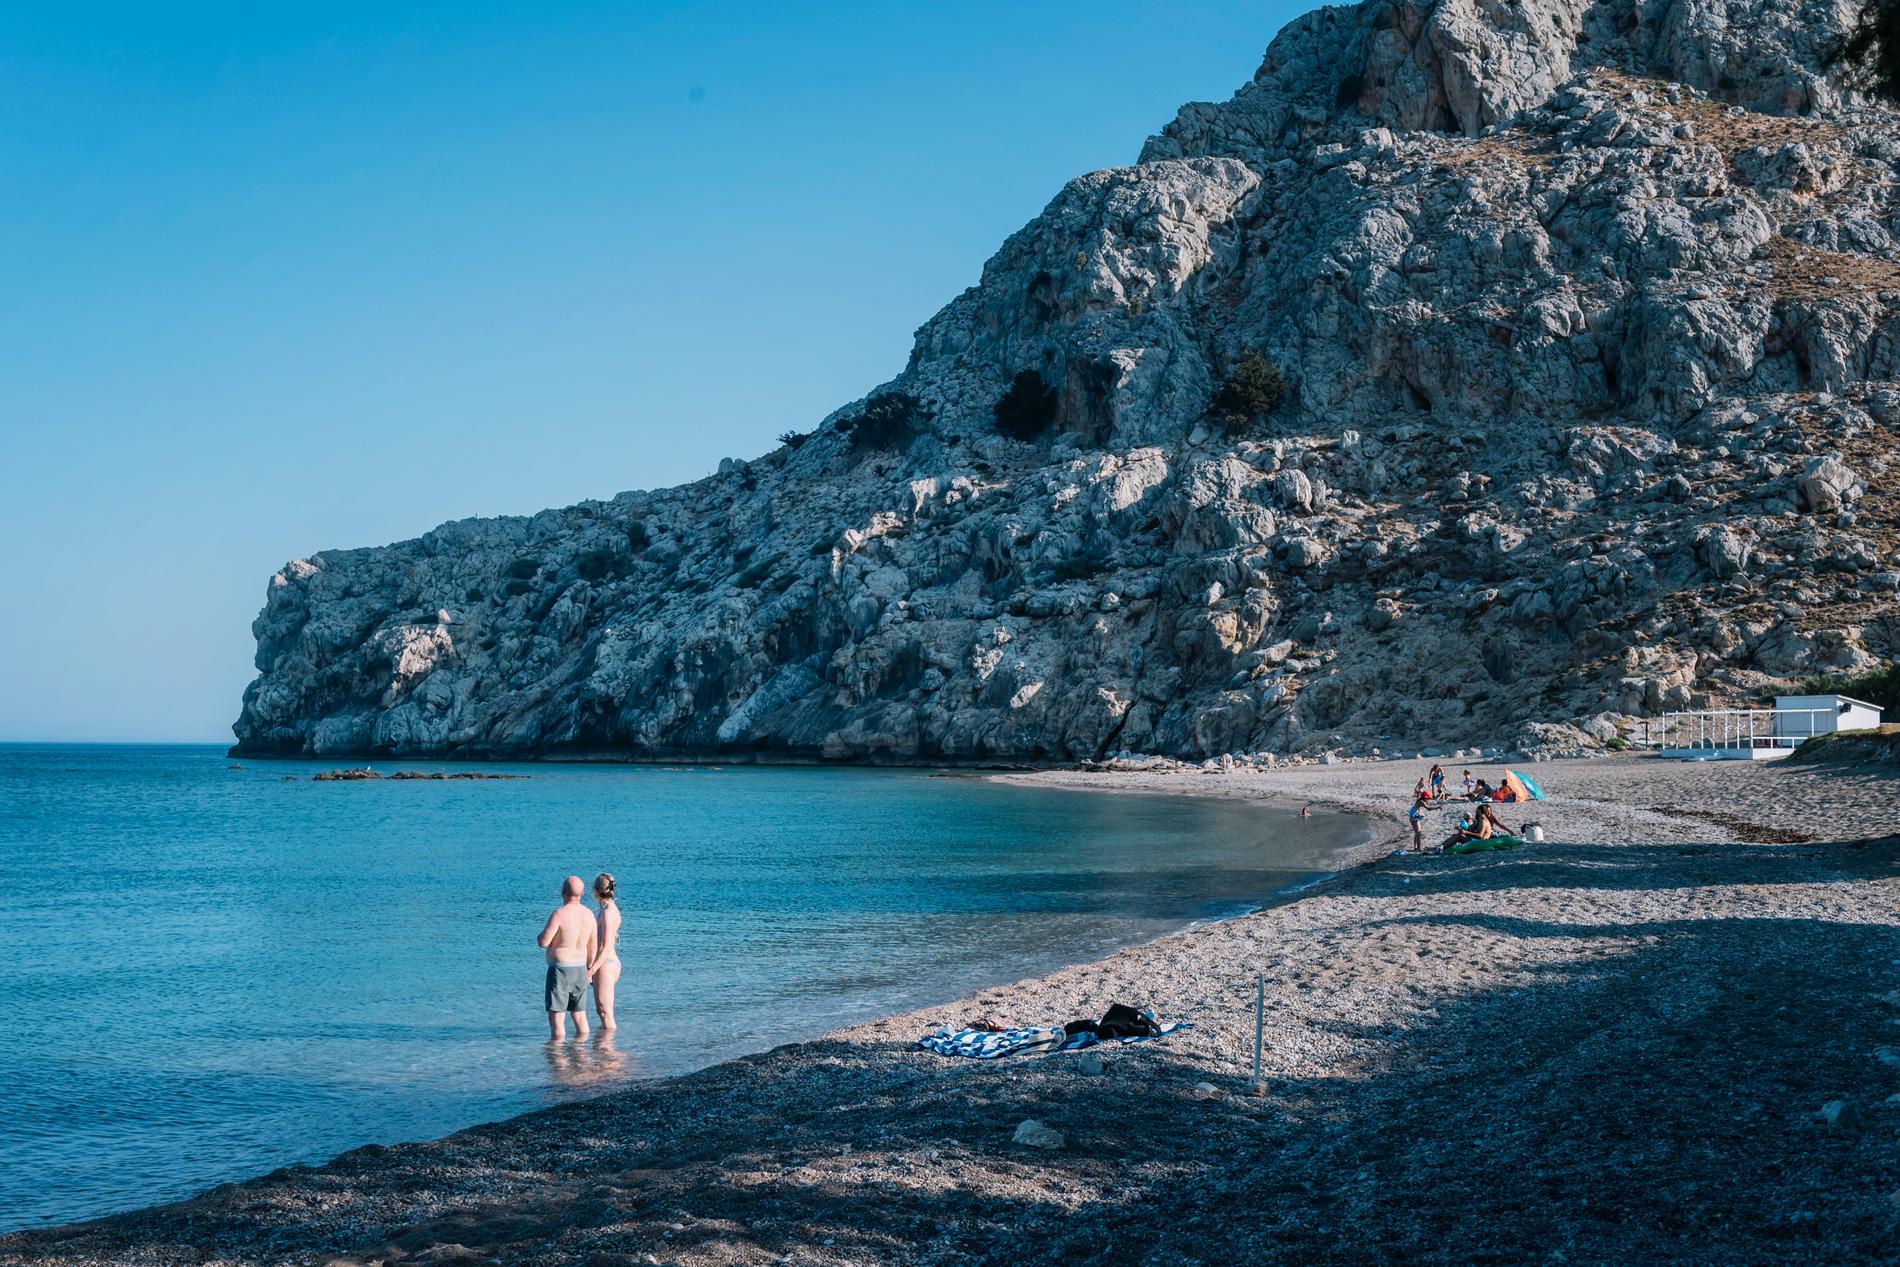 Förra årets turismsäsong var en katastrof för Grekland. Bilden är tagen på stranden nedanför ett charterhotell i Kolymbia på Rhodos – där många av rummen stod tomma. Nu hoppas Grekland på revansch.